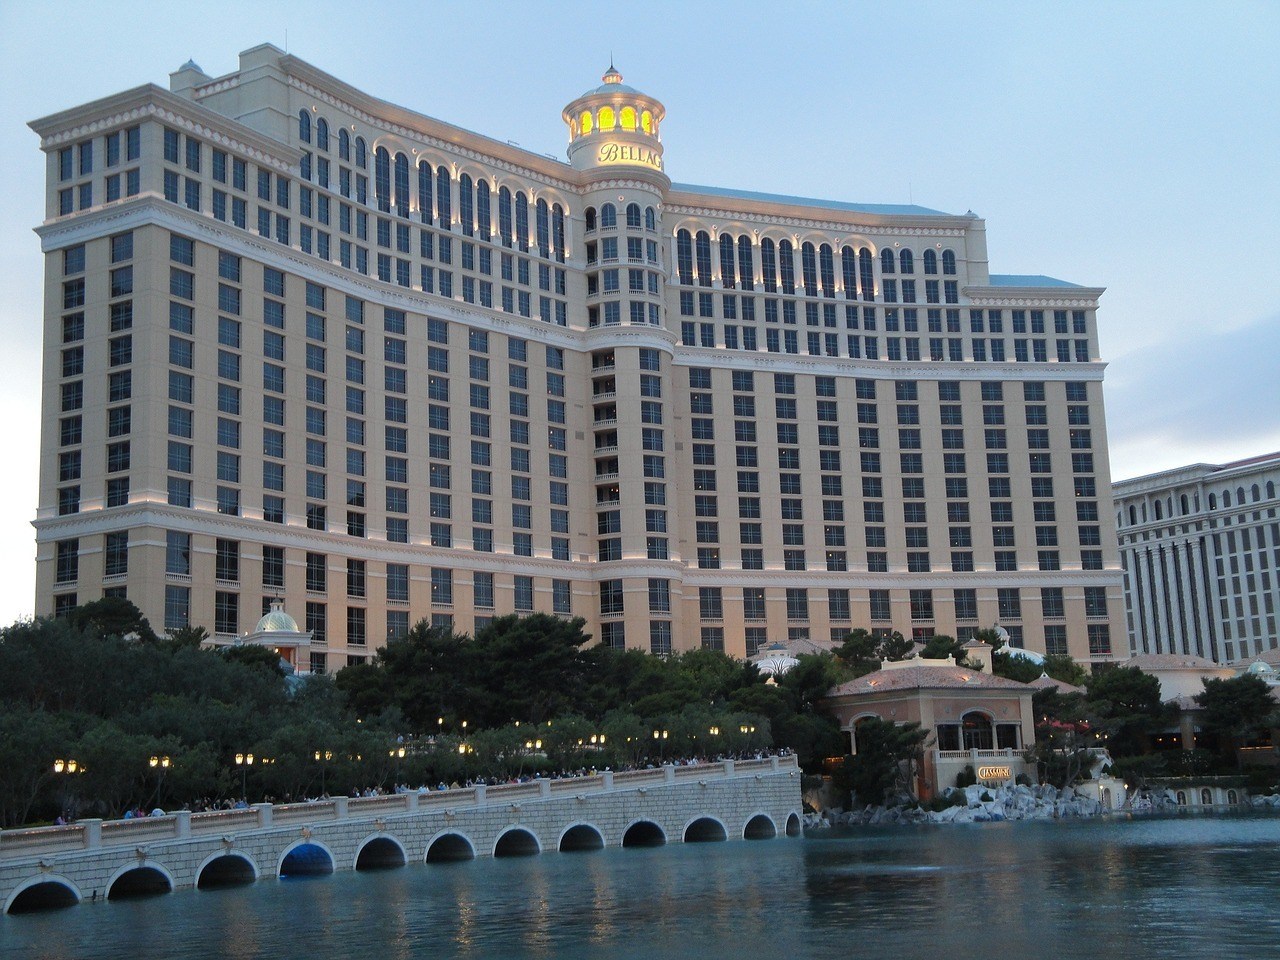 The Bellagio Casino